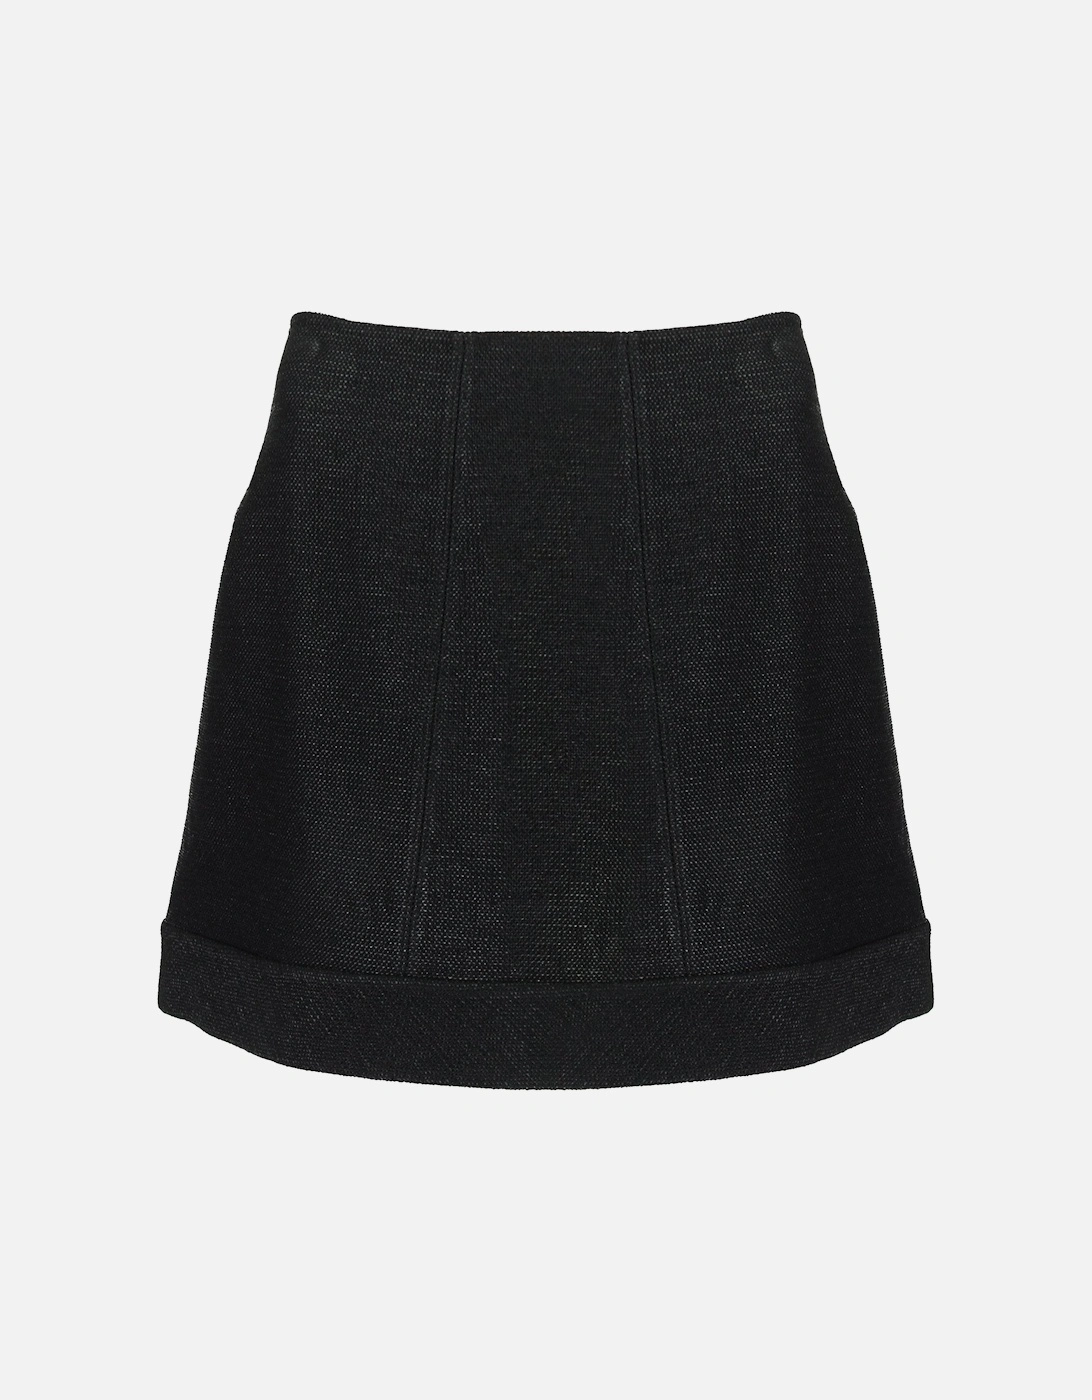 Skirt, 8 of 7